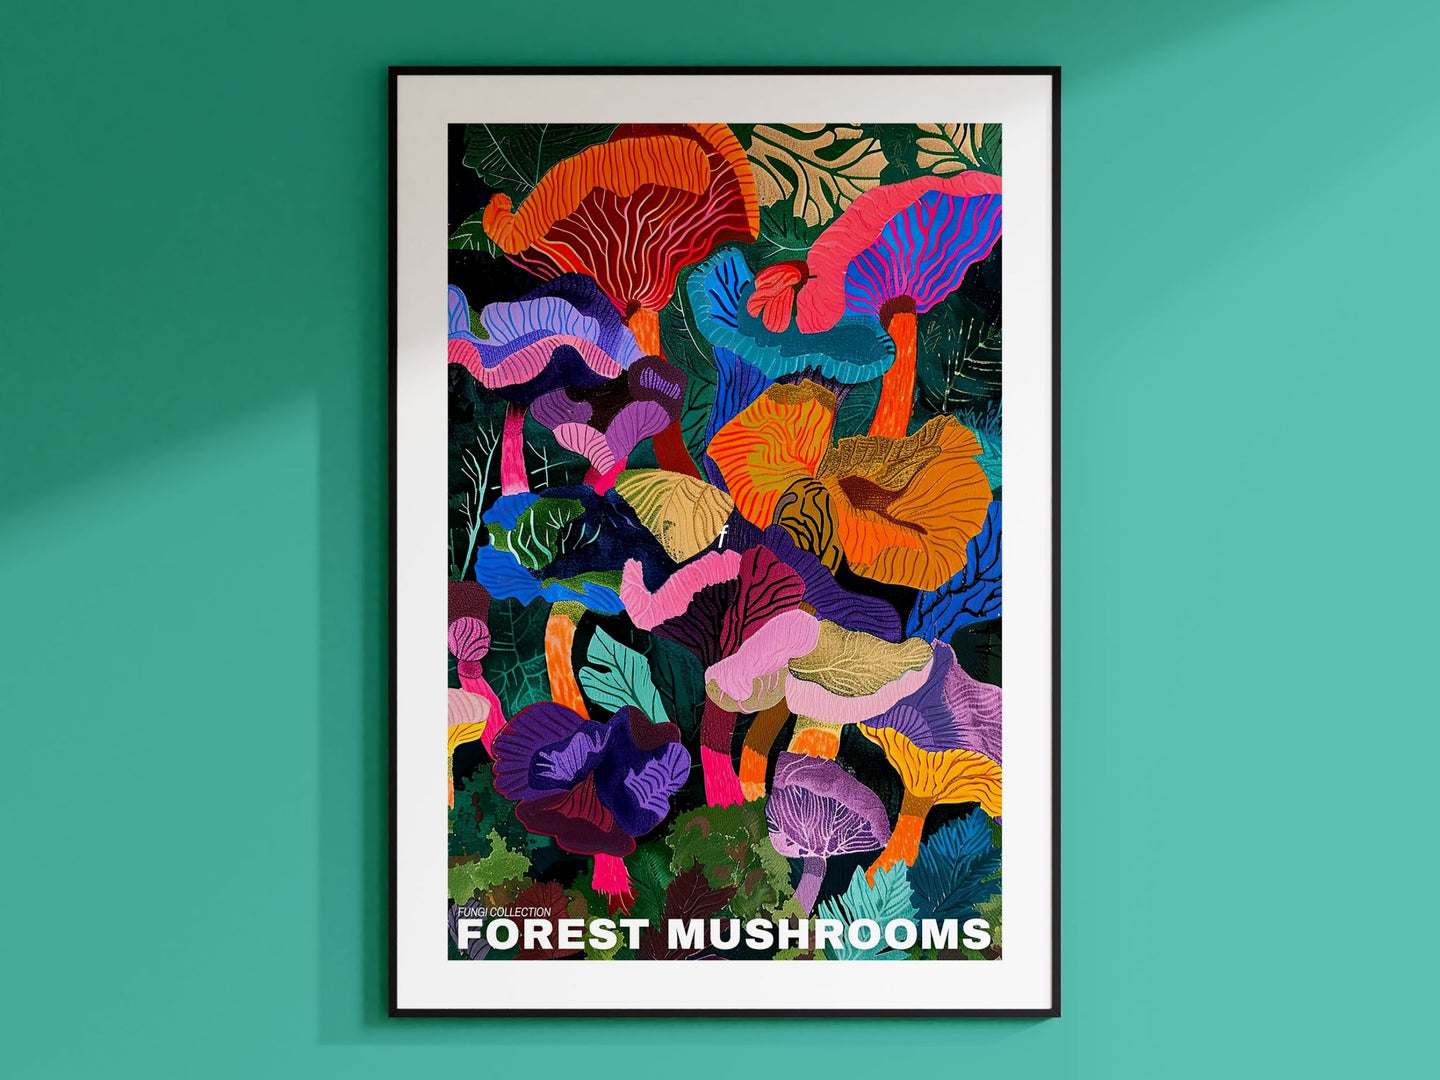 Mushroom Poster, Mushroom Prints, Mushroom Illustrations, Mushroom Decor, Botanical Prints, Vintage Mushroom, Mushroom Wall Art, Retro Art